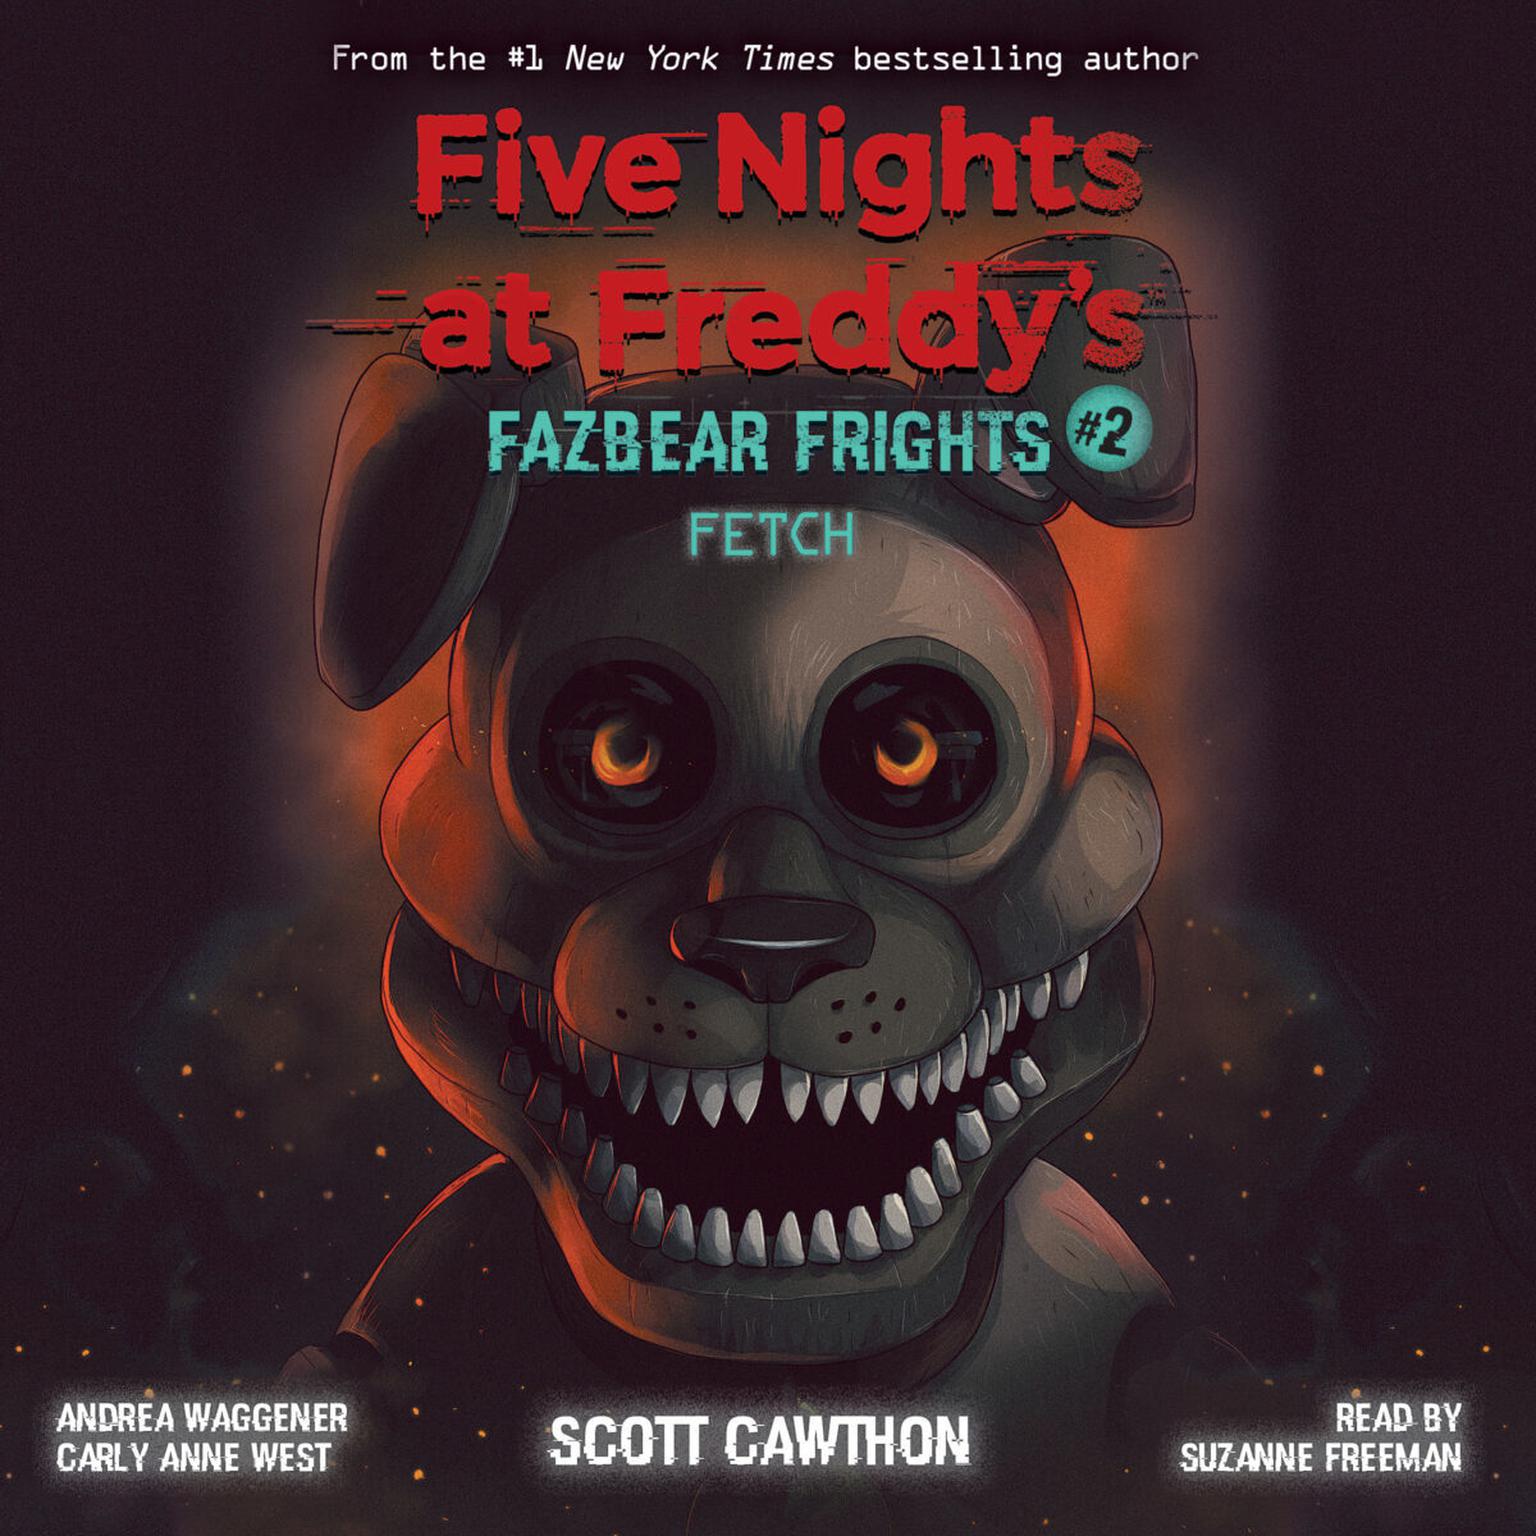 Книги фнаф ужасы фазбера. Книга Fazbear's Fright. Five Nights at Freddy s книга Fazbear Fright. Fazbear Frights книги. Книга Фредди Скотт Коутон.